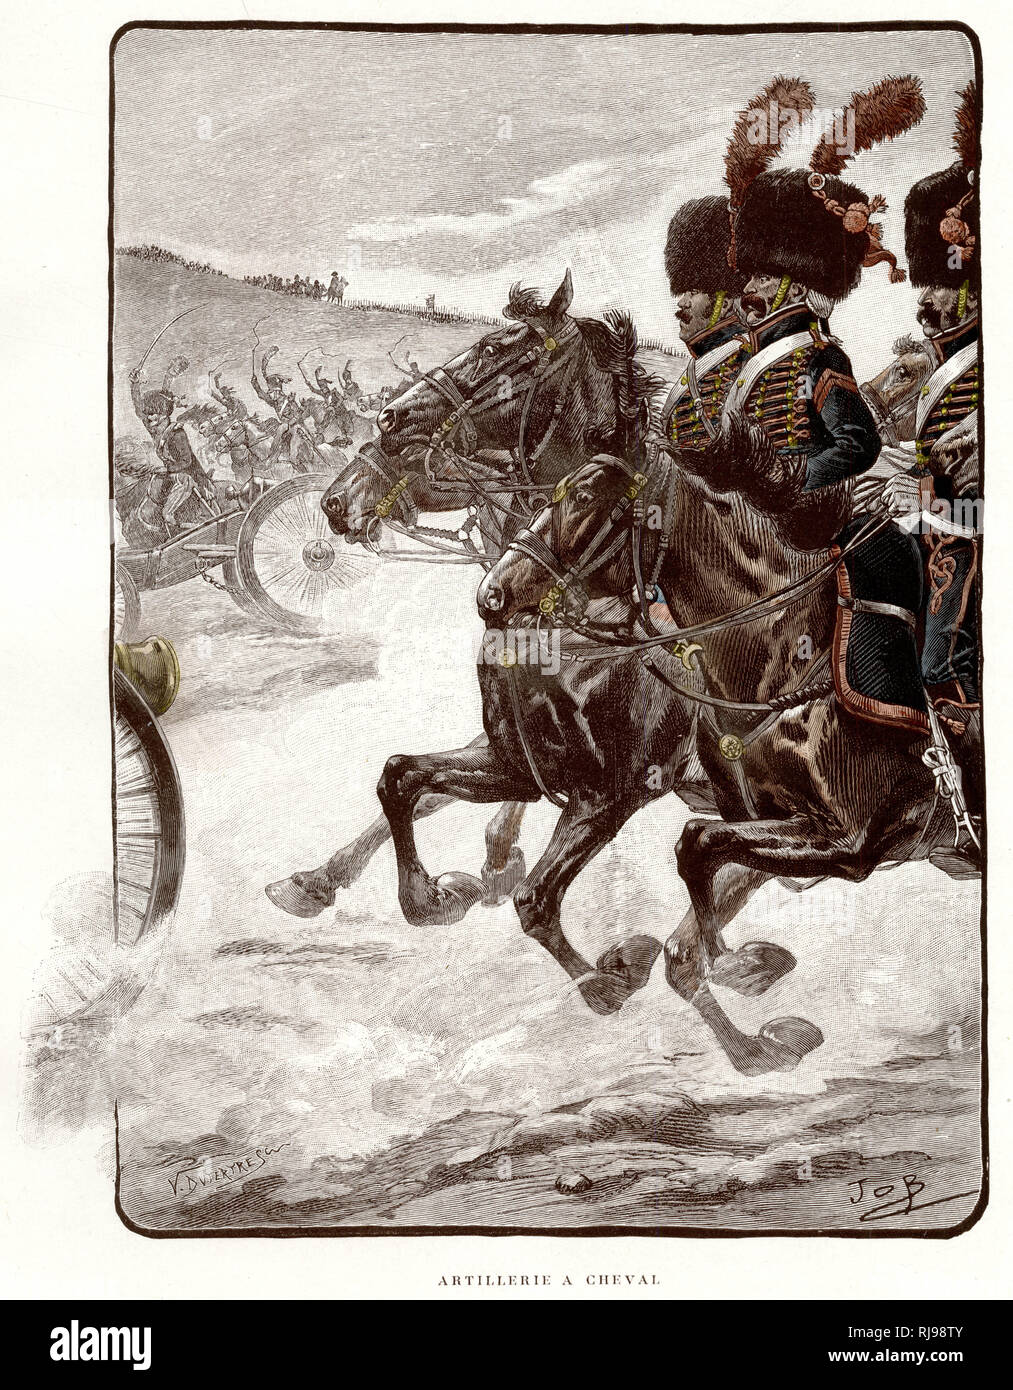 Artillerie a cheval (mounted artillery) Stock Photo